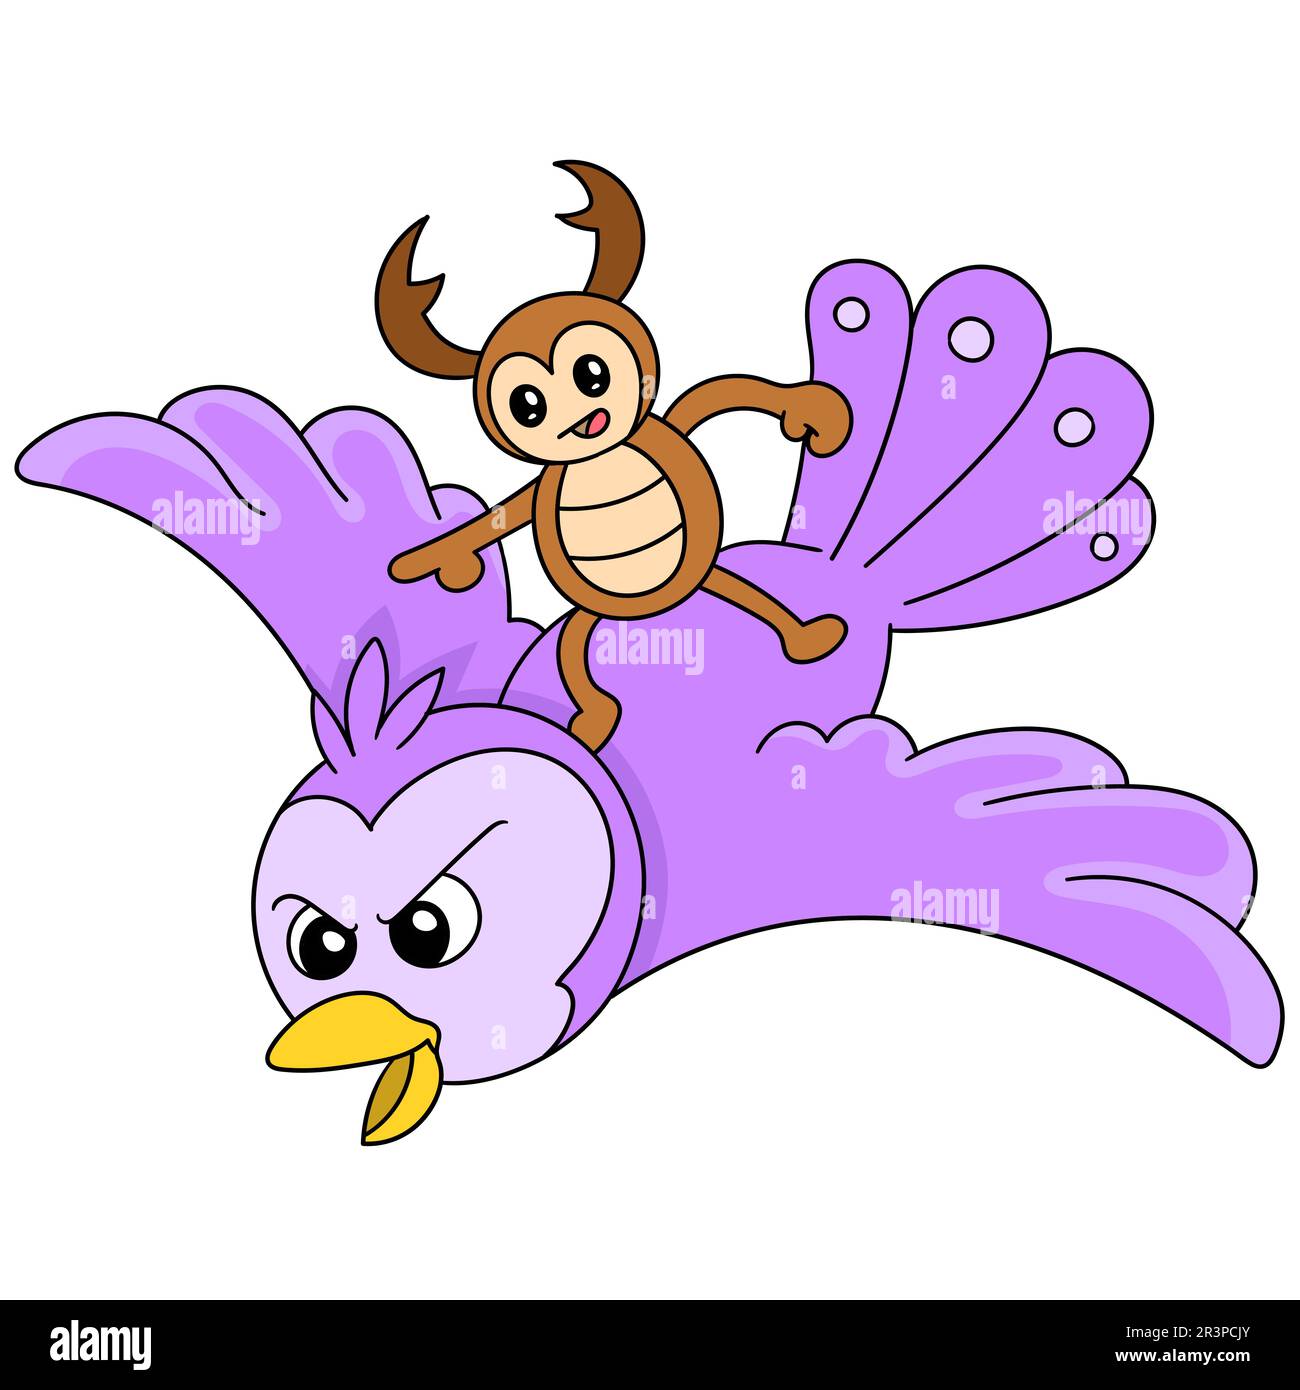 Le coléoptère de la bande dessinée est à cheval sur un hibou volant, un koodle kawaii. icône doodle Banque D'Images